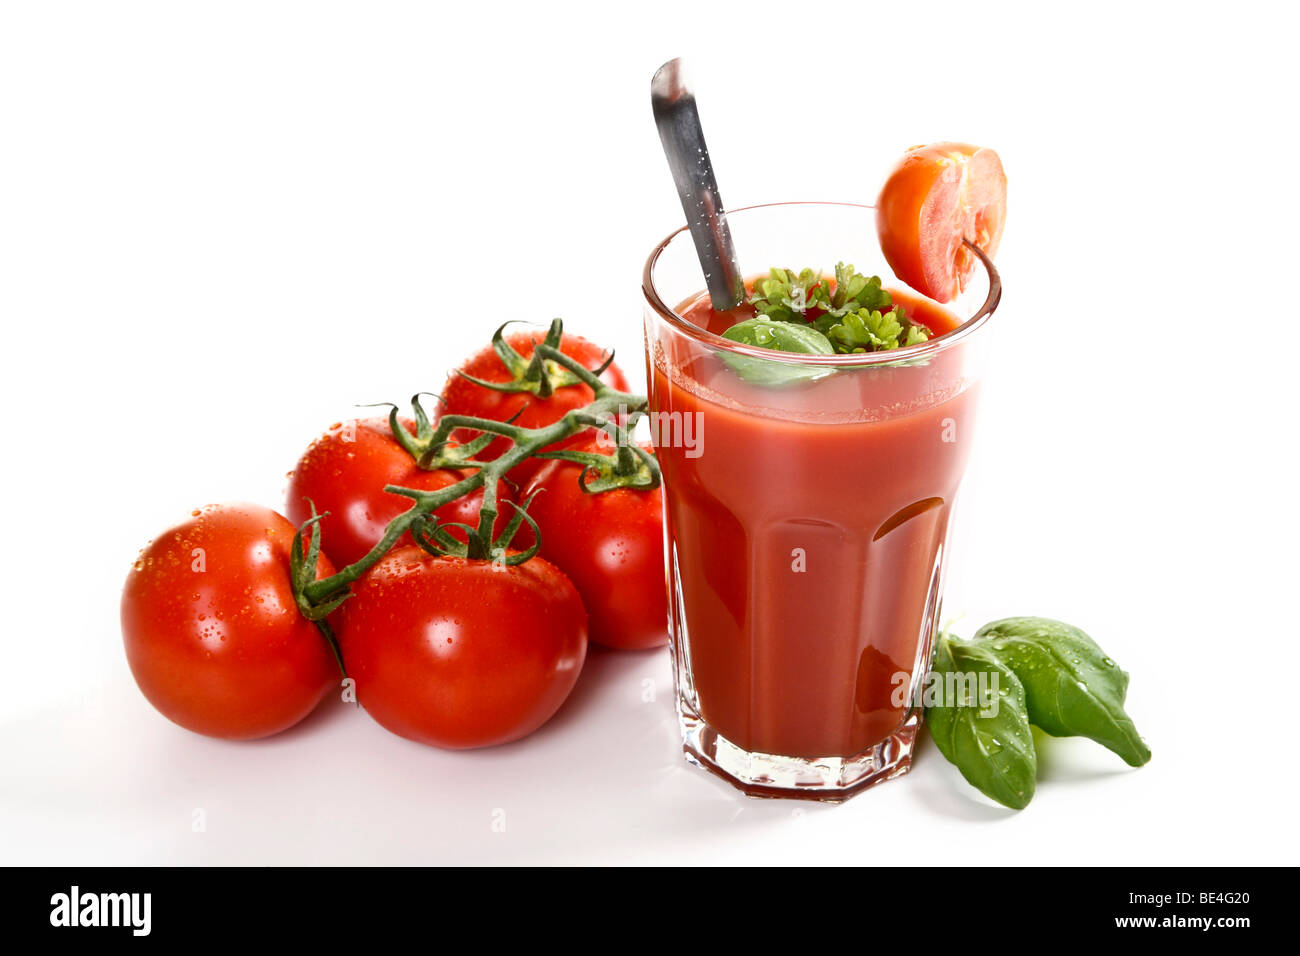 Du jus de tomates au basilic, persil et tomates Beefsteak Banque D'Images